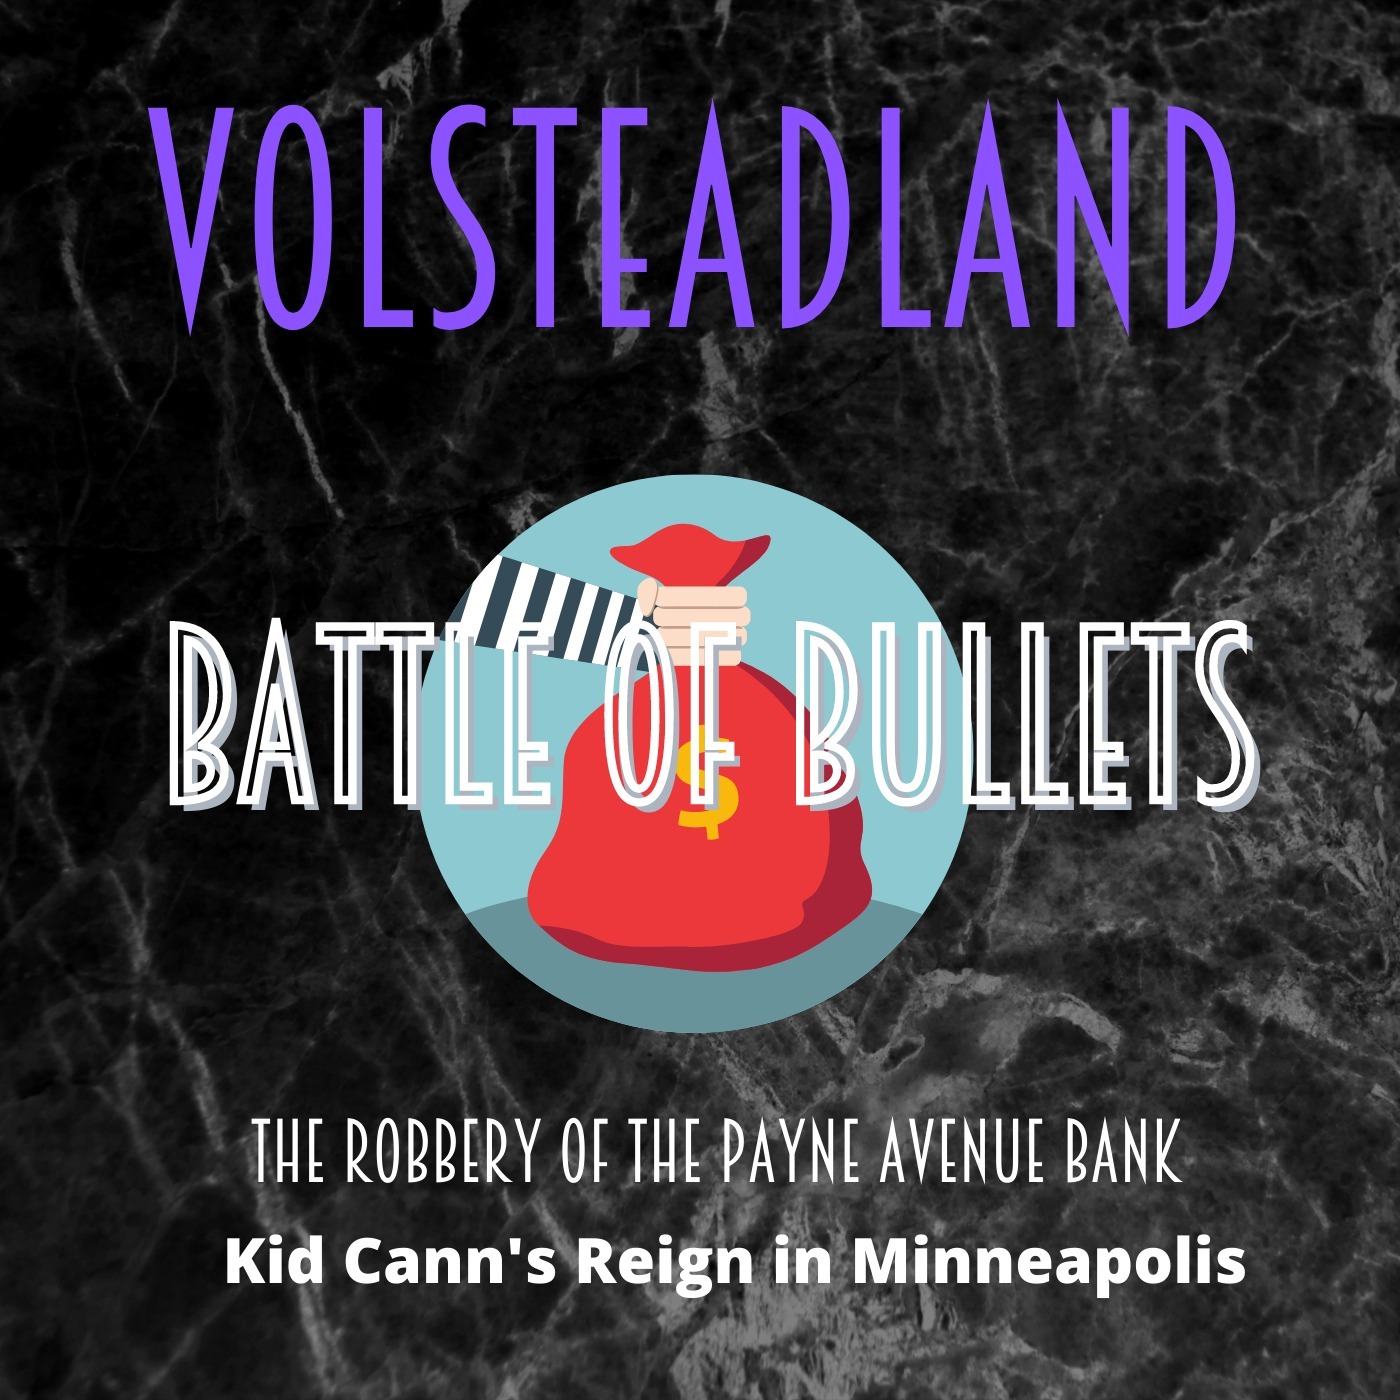 Volsteadland: Battle of Bullets Image